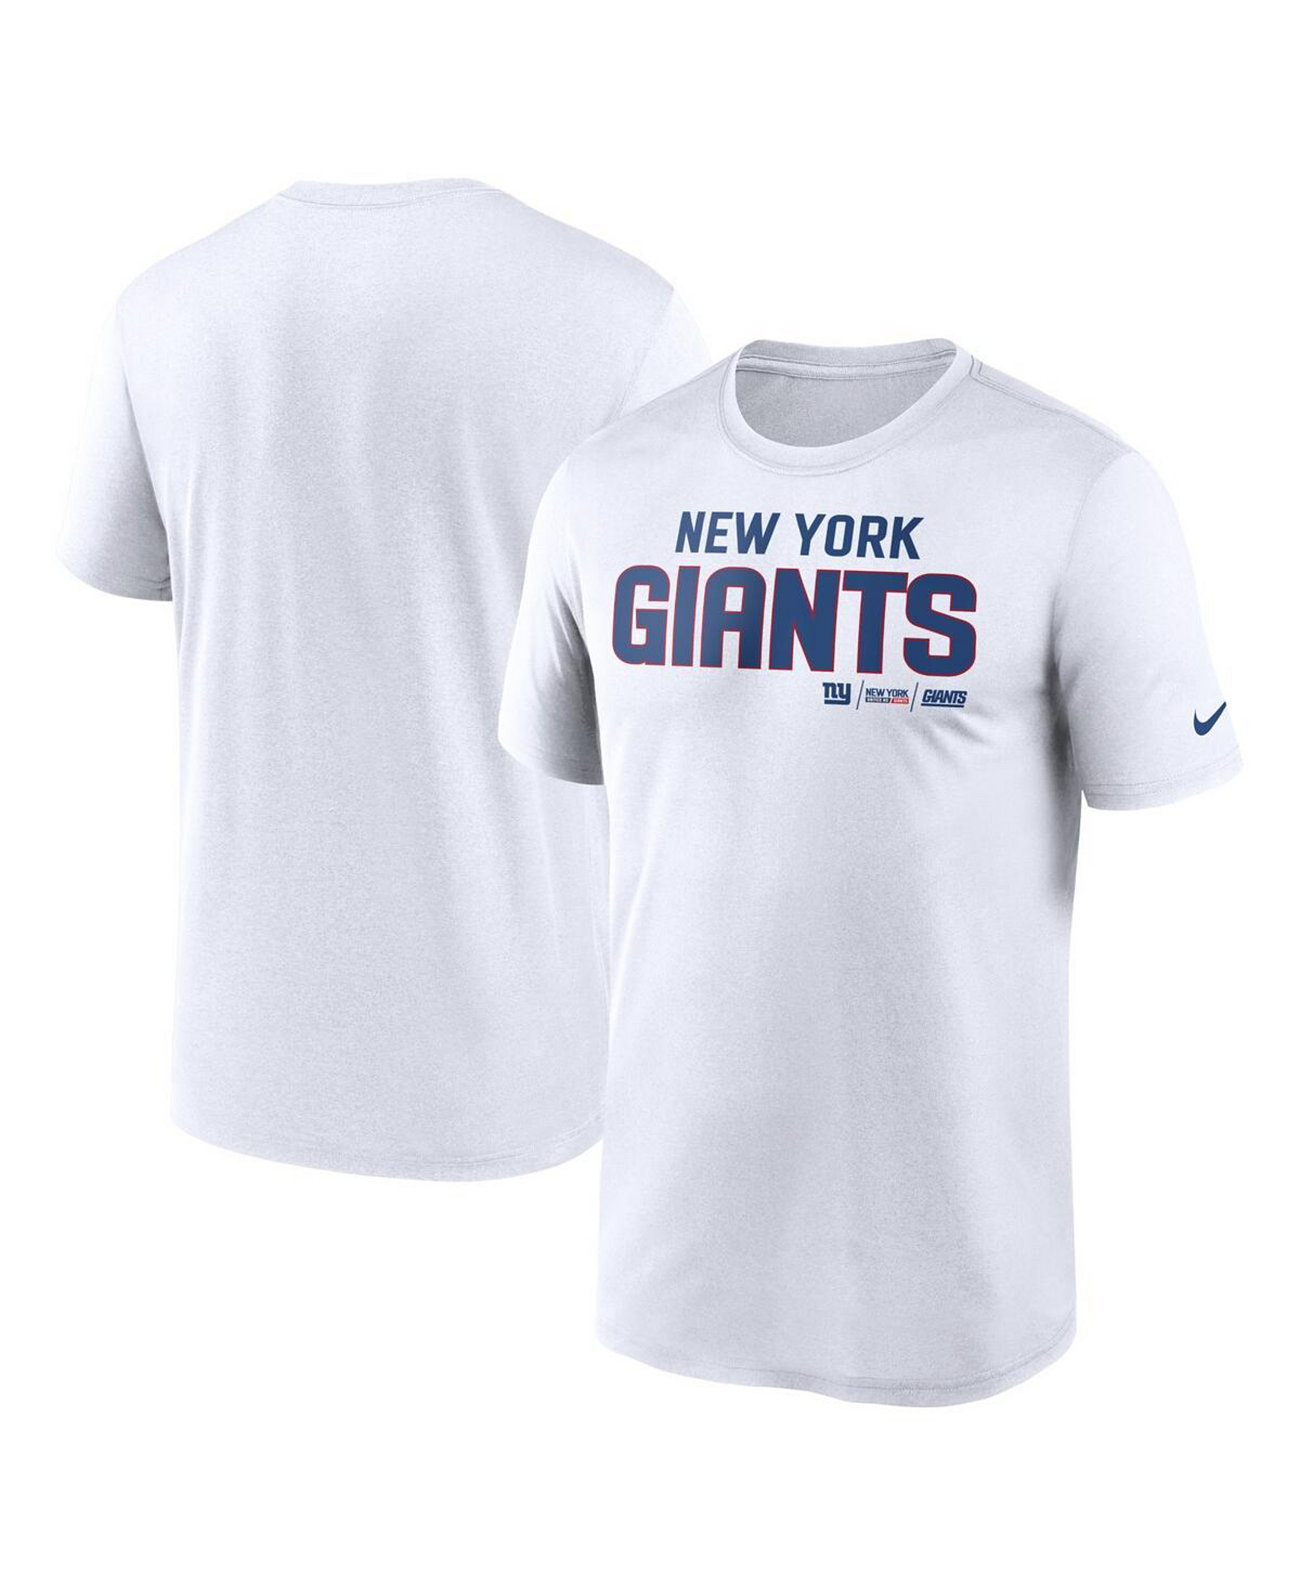 Мужская белая футболка New York Giants Legend Community Performance Nike